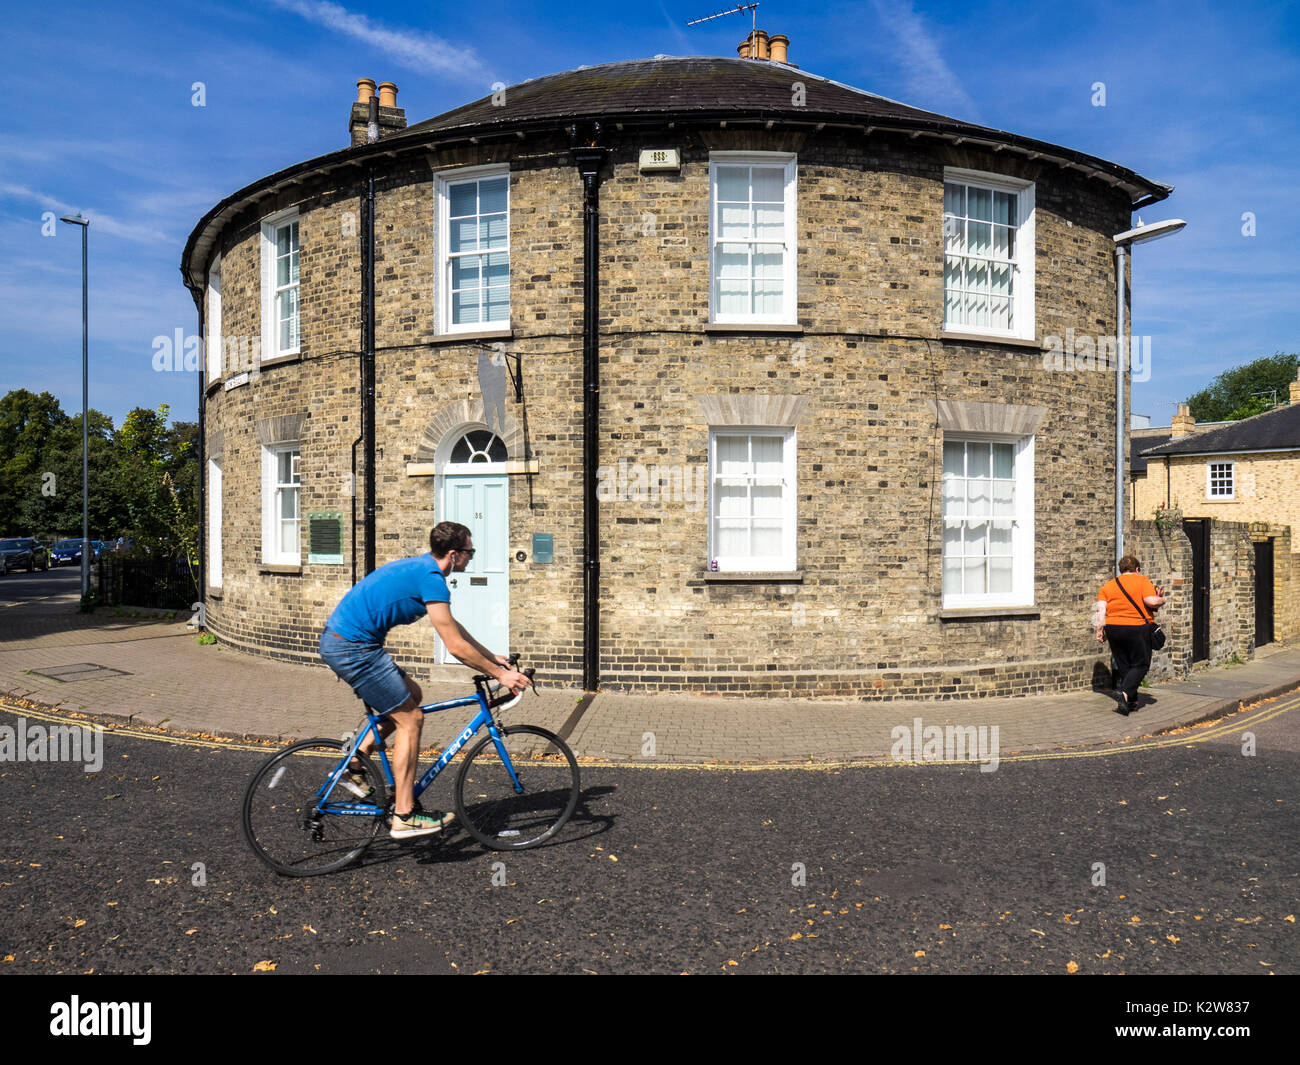 La façade ronde chambre à Cambridge UK - un cycliste passe une façade ronde building de New Square, Cambridge UK Banque D'Images